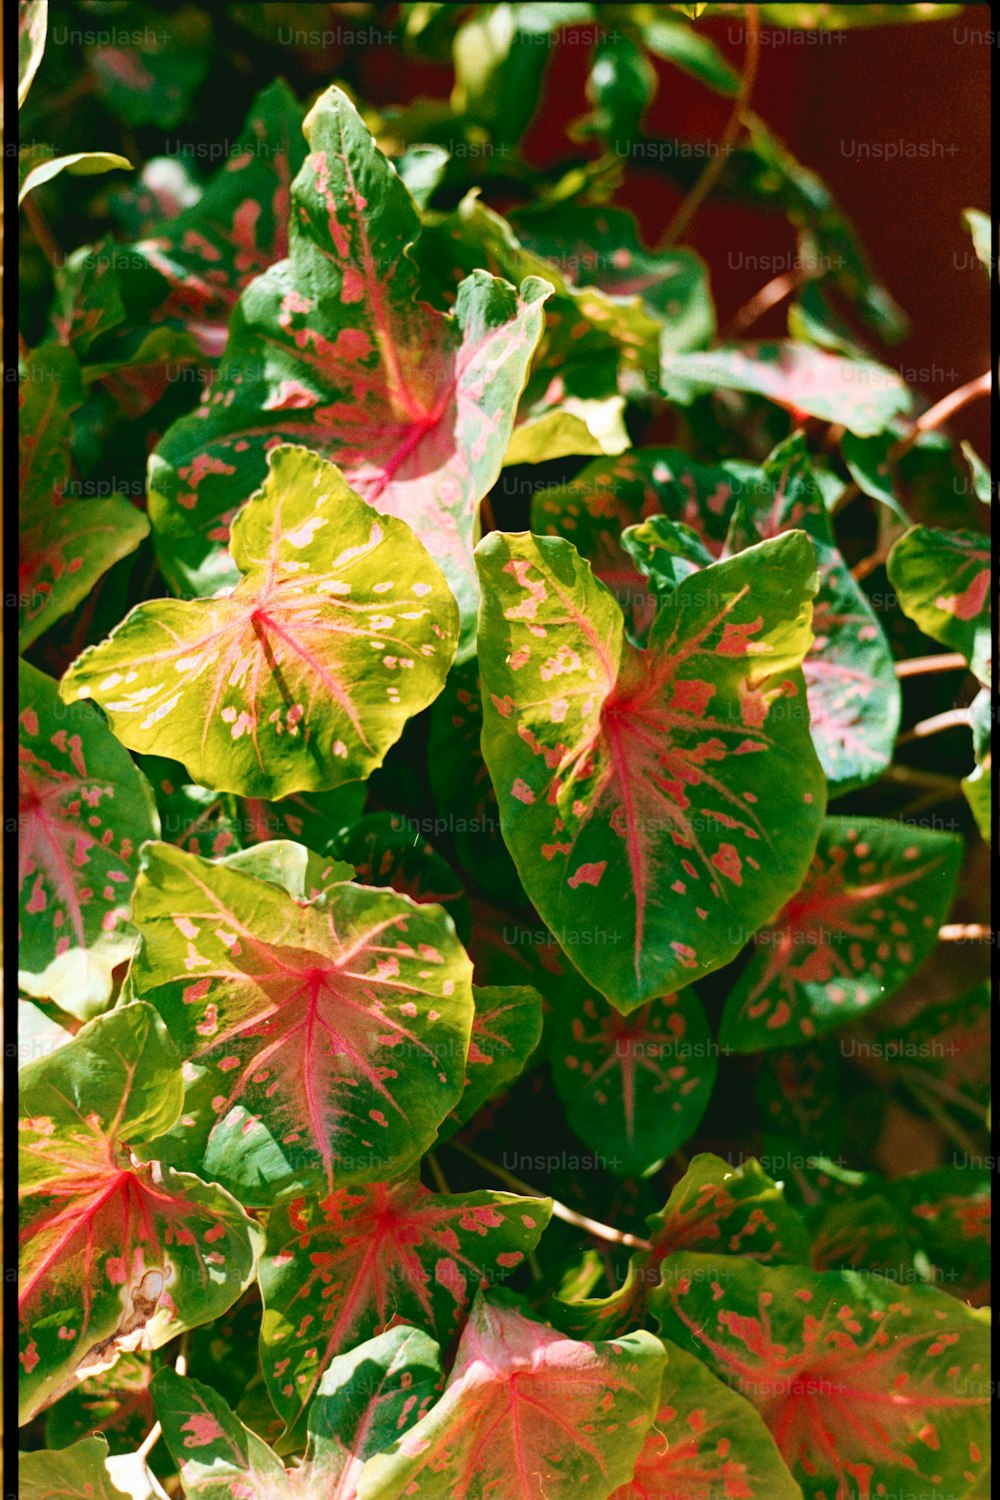 Un primer plano de una planta con hojas rojas y verdes